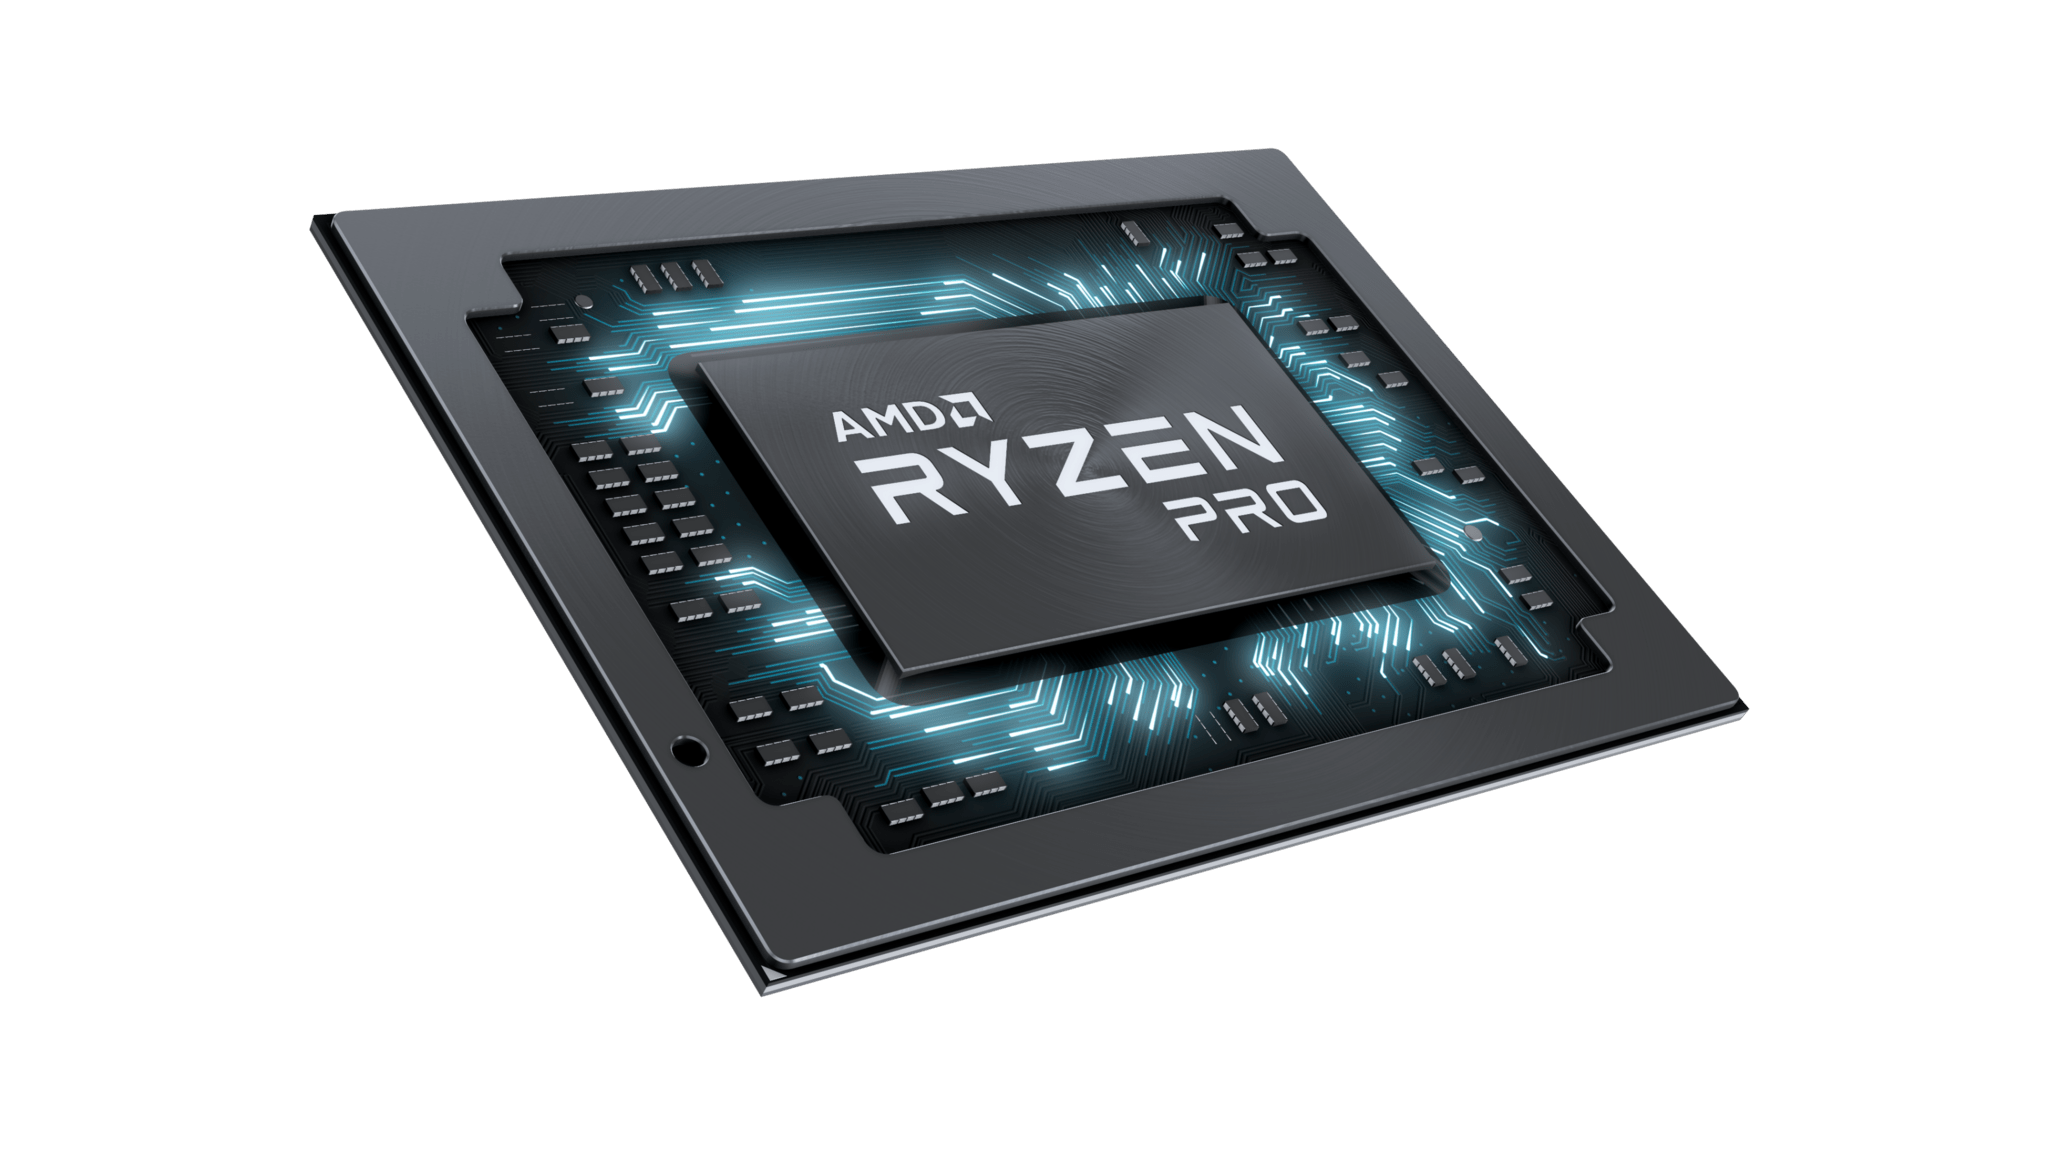 Premiera mobilnych AMD Ryzen Pro 2 generacji